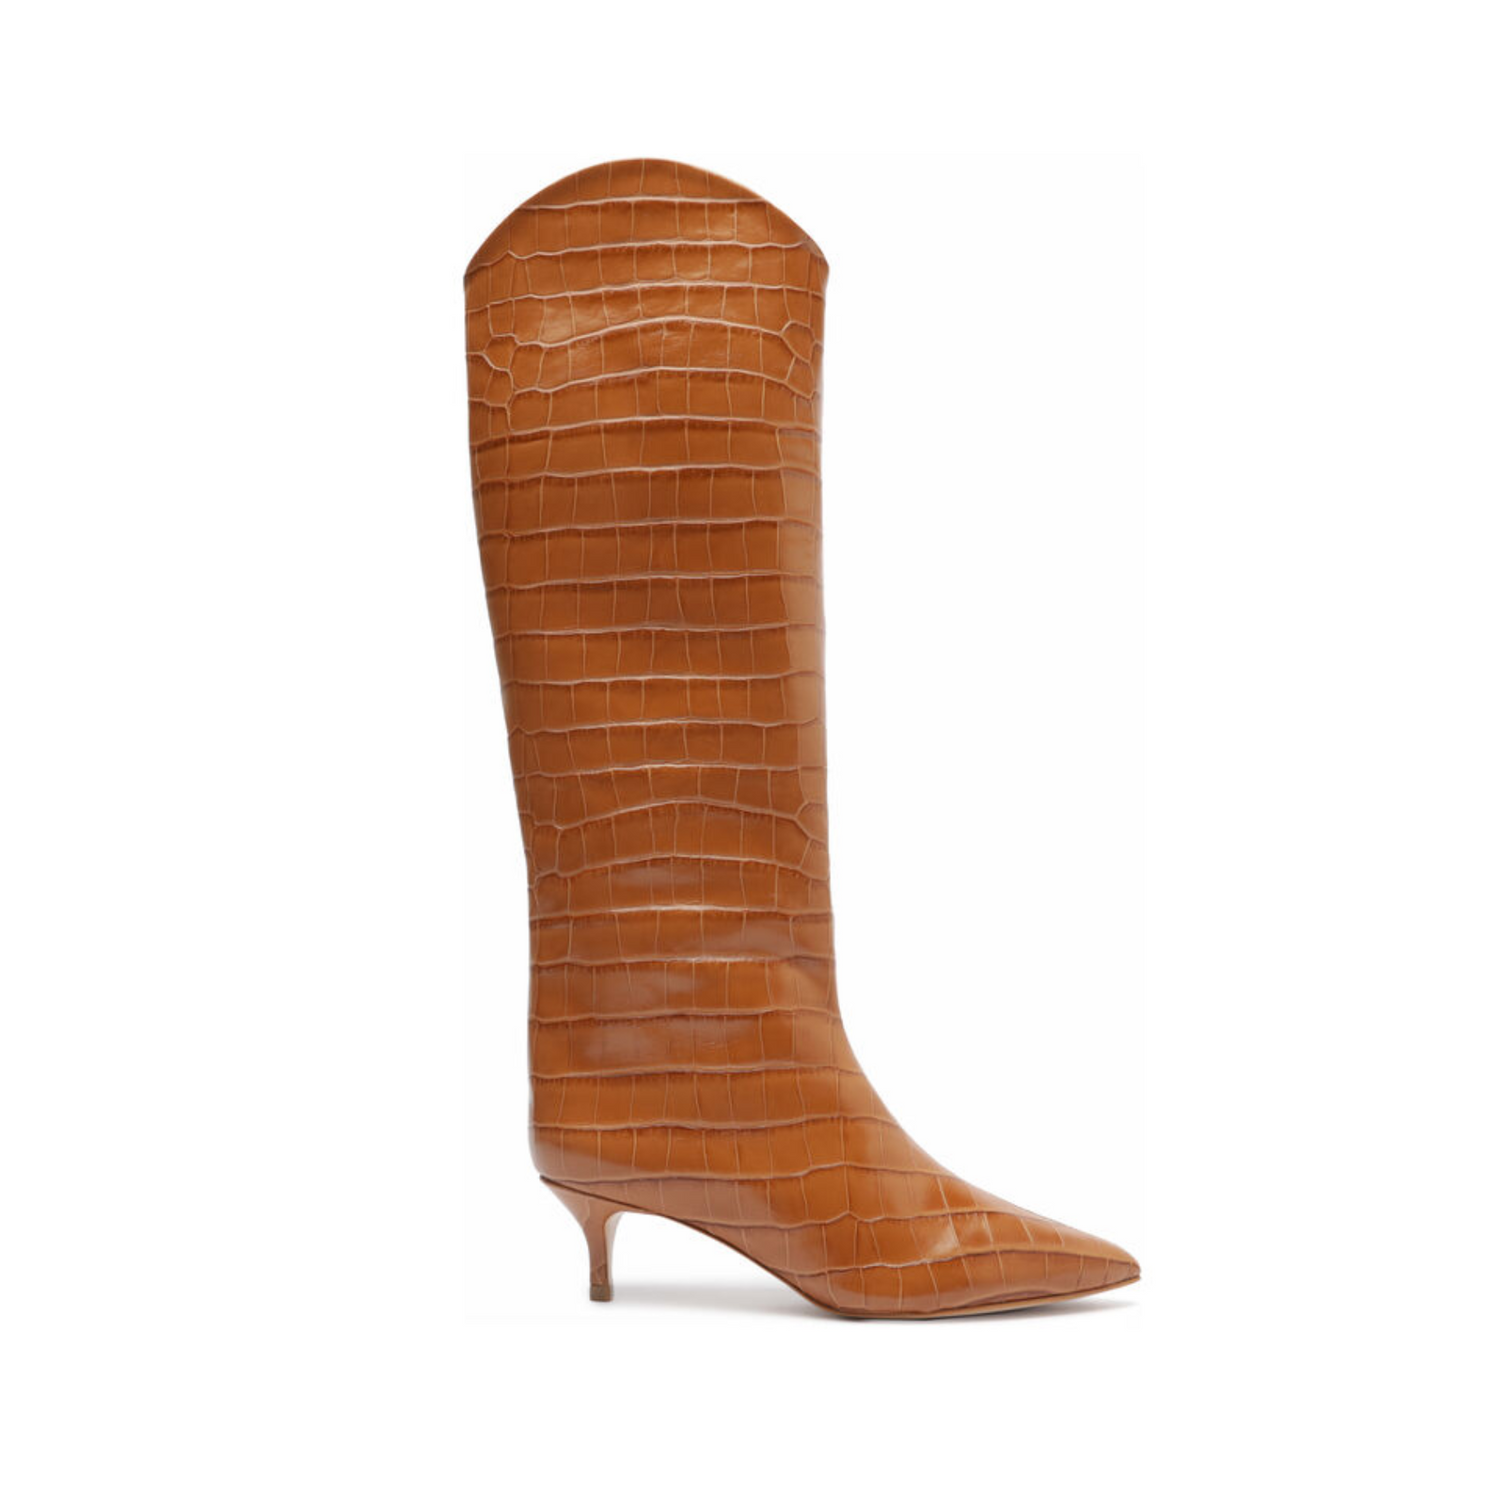 Maryana Lo Crocodile-Embossed Leather Boot Boots FALL 23 5 Honey Peach Crocodile-Embossed Leather - Schutz Shoes